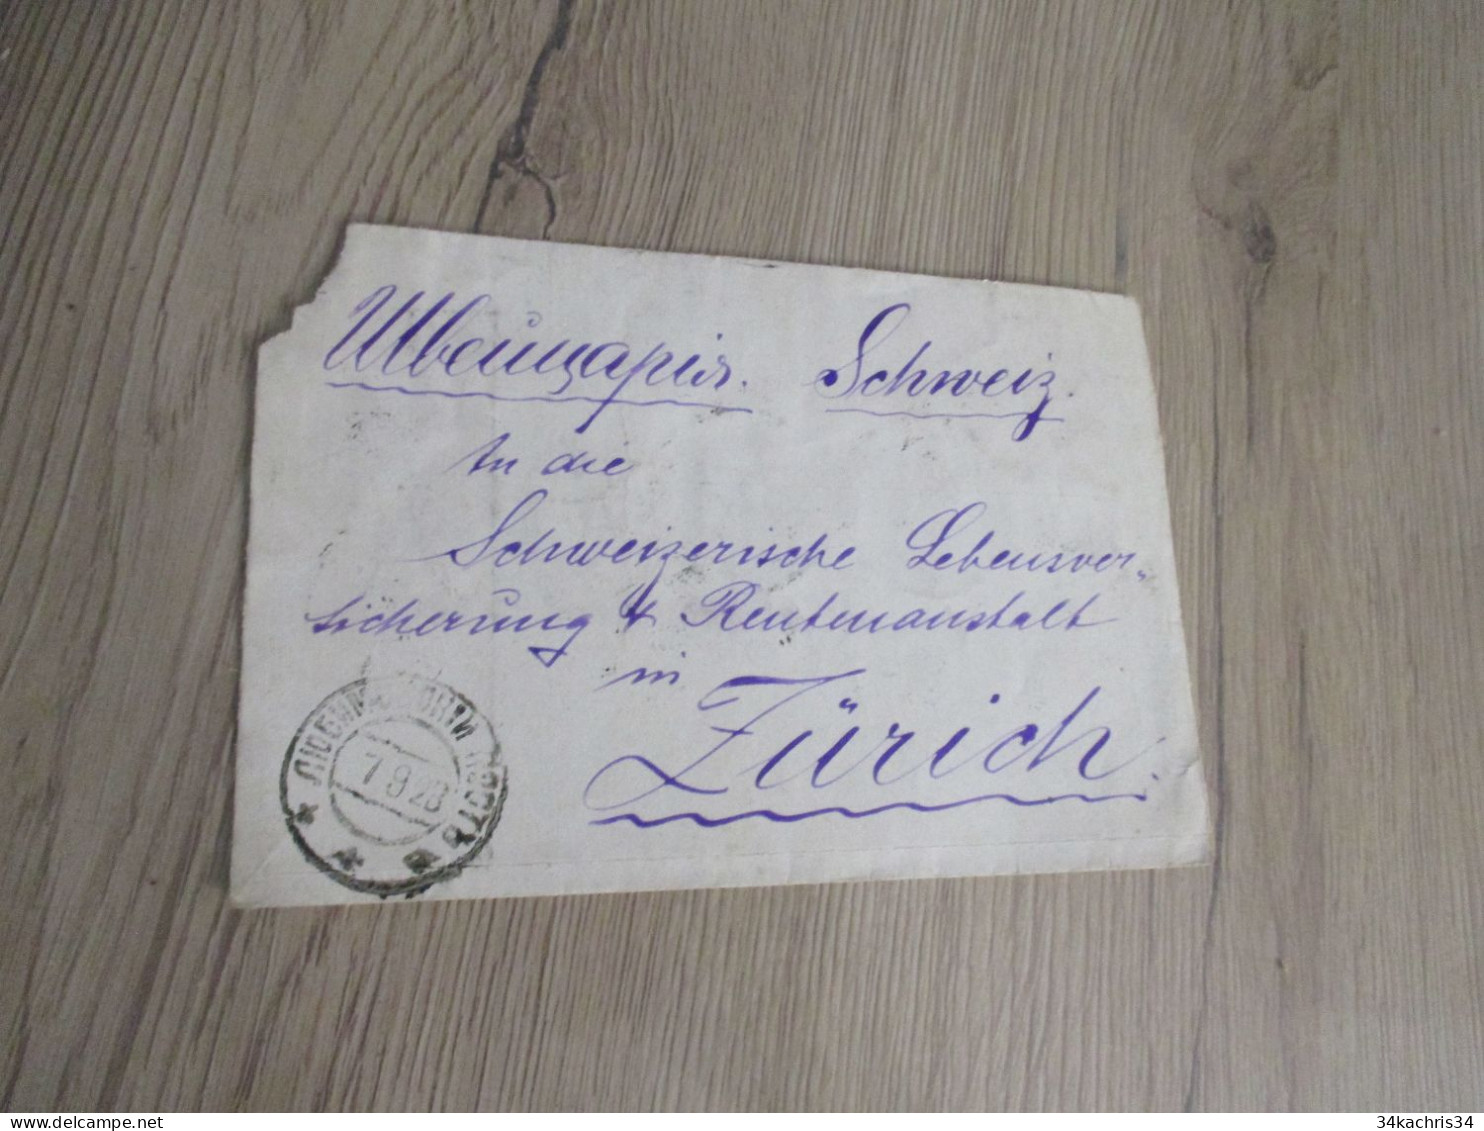 Lettre Russie Russia 9 Stamp Surchargés P100P P200P 1928 Pour Zurich - Briefe U. Dokumente